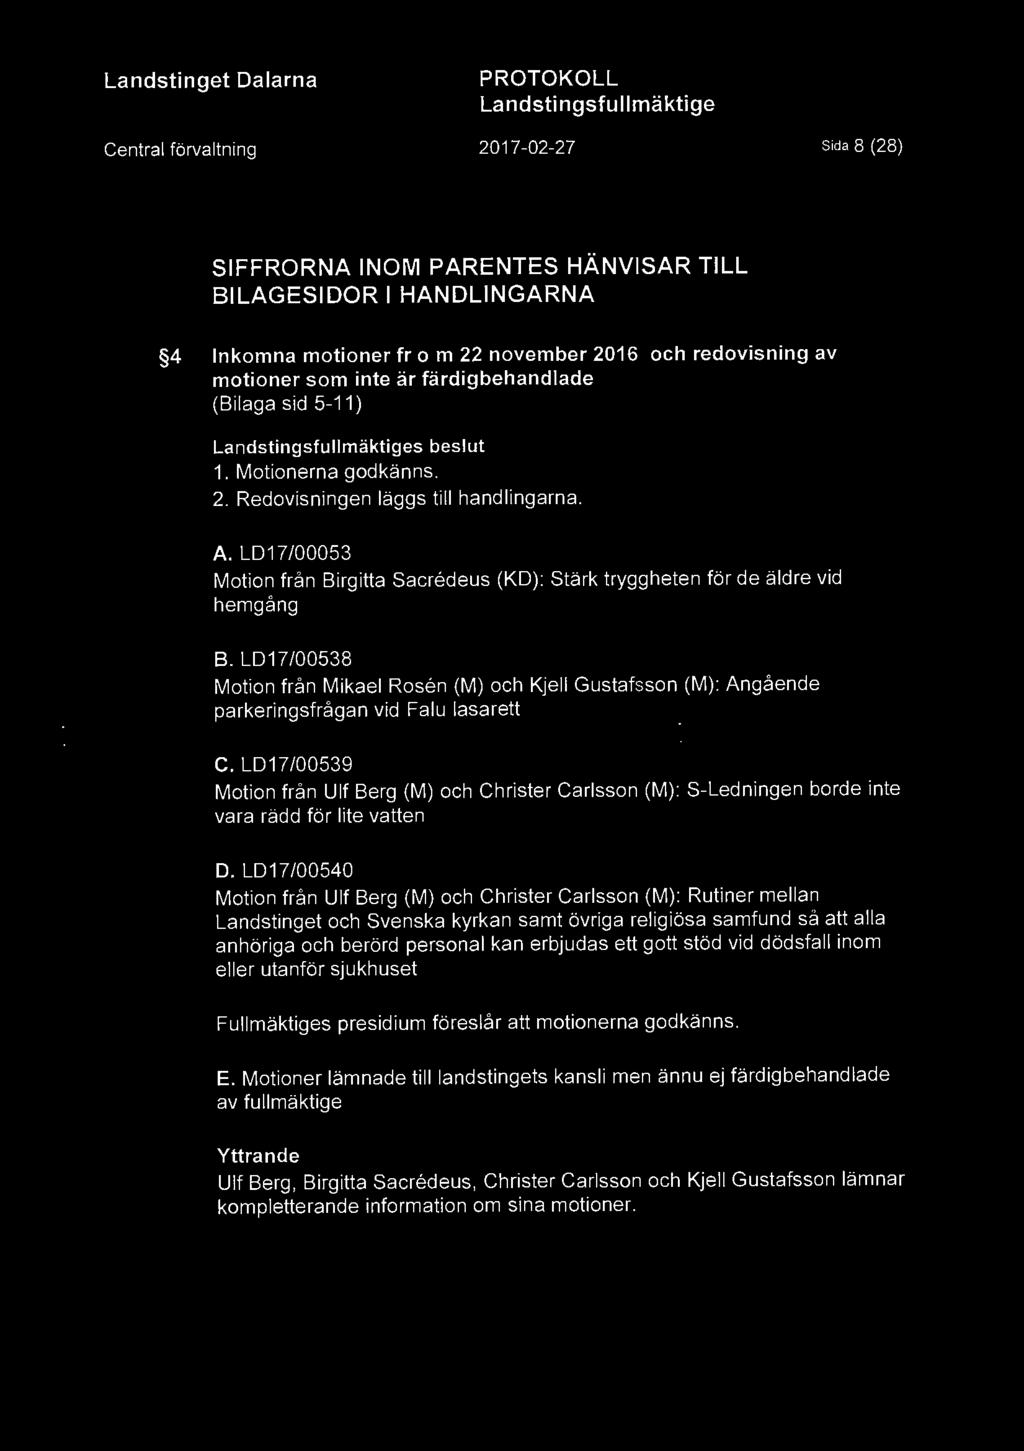 L017/00538 Motion från Mikael Rosen (M) och Kjell Gustafsson (M): Angående parkeringsfrågan vid Falu lasarett C.